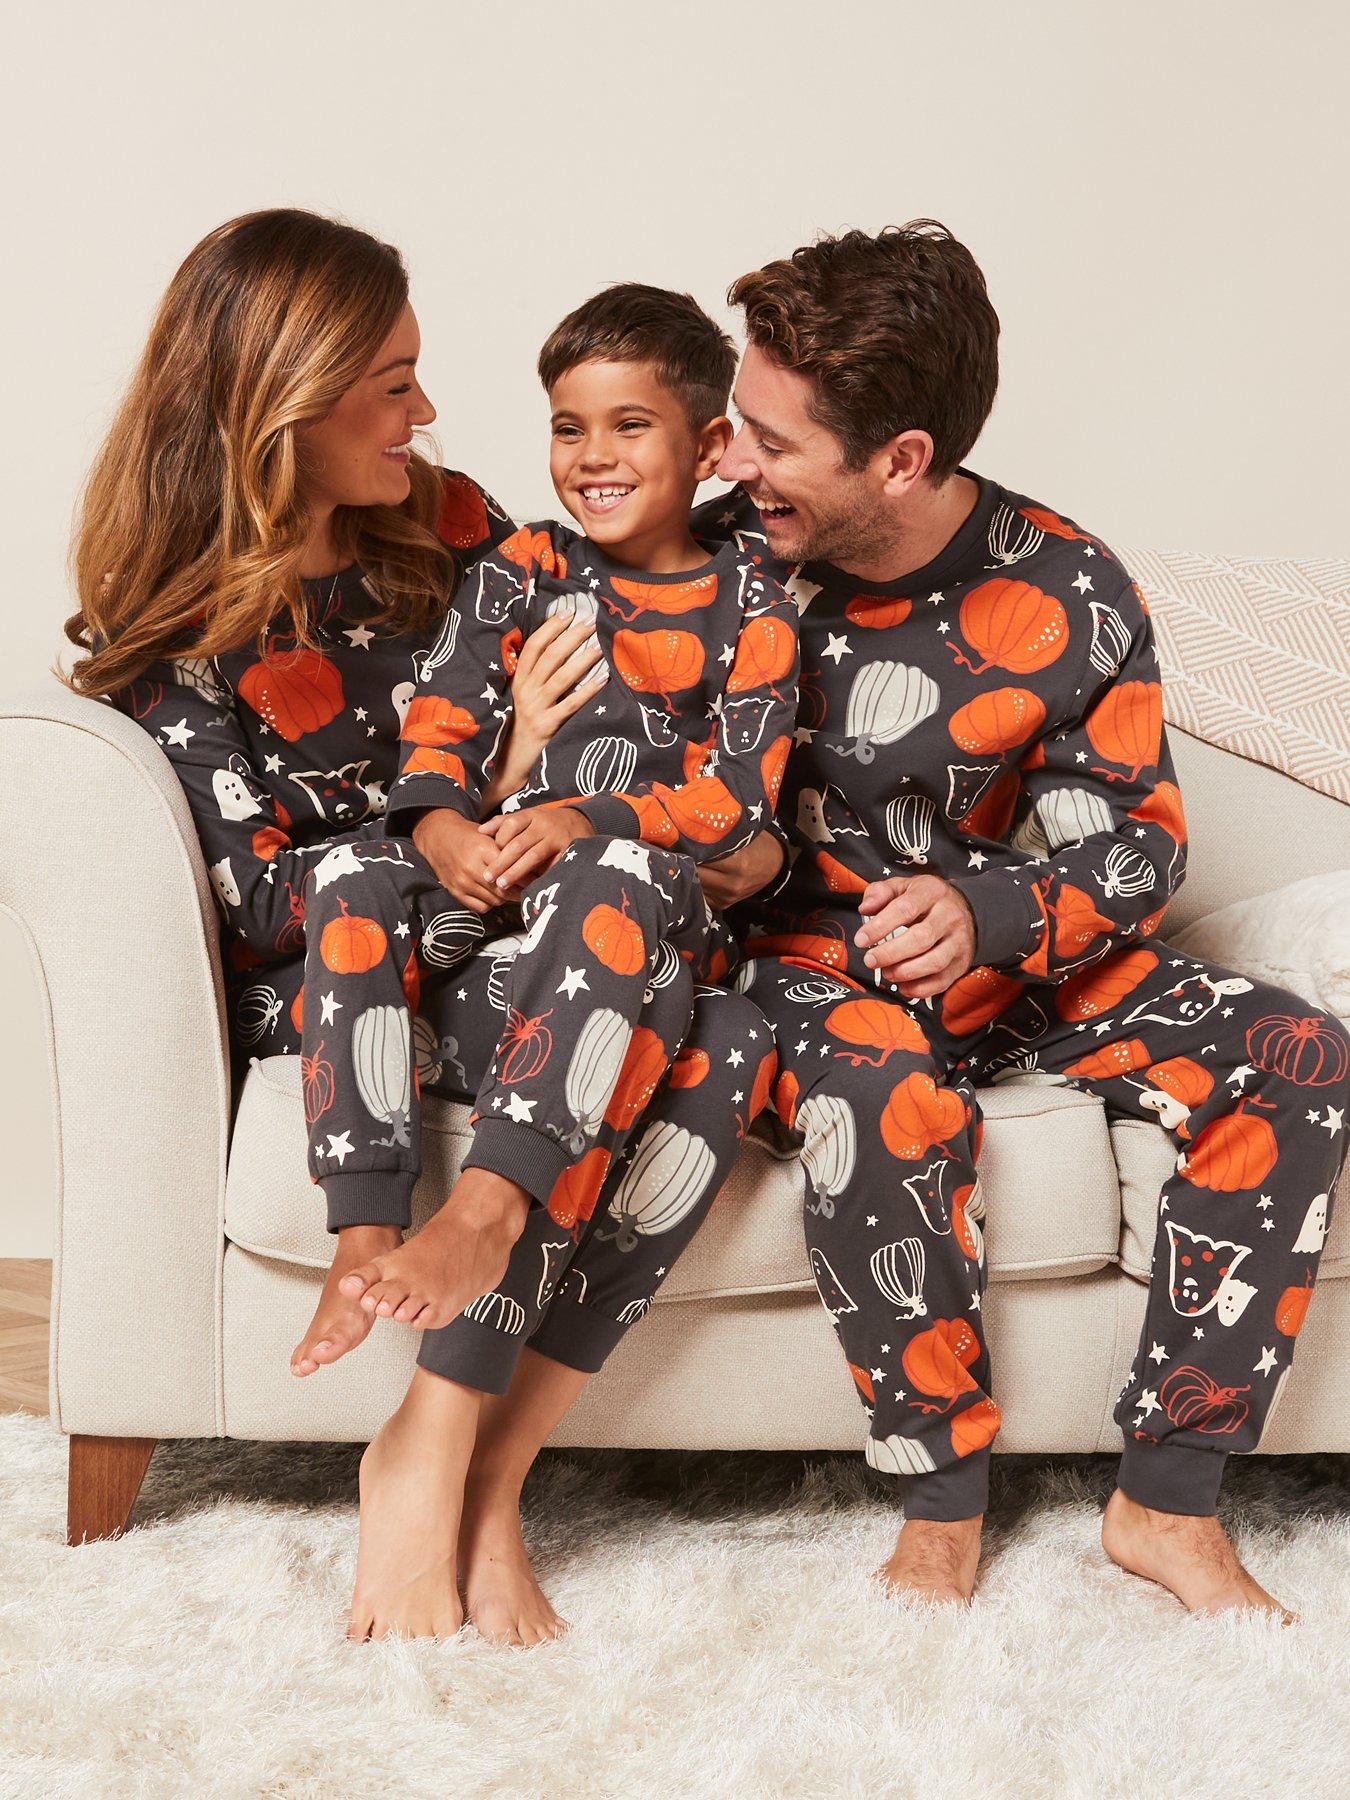 Very Man Mens Family Moose Fairisle Mini Me Christmas Pyjamas